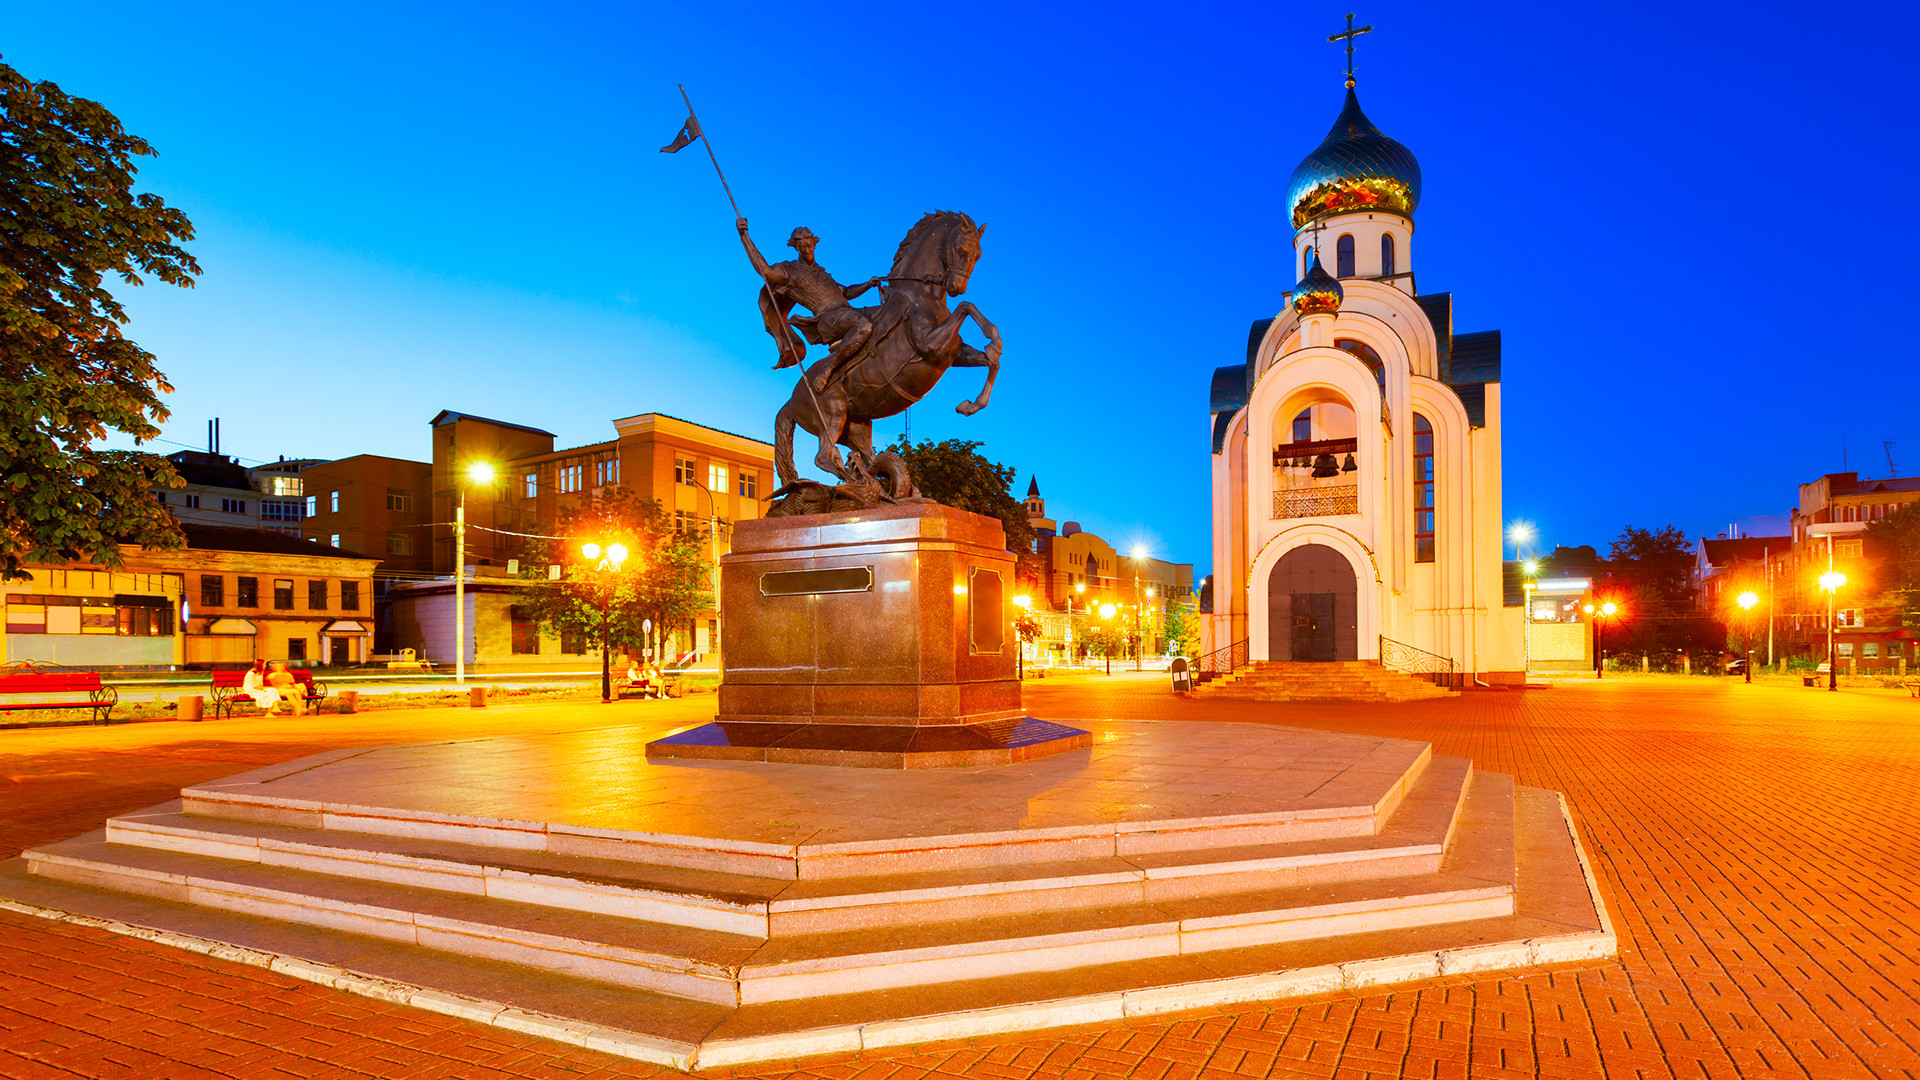 Victory Square in Ivanovo